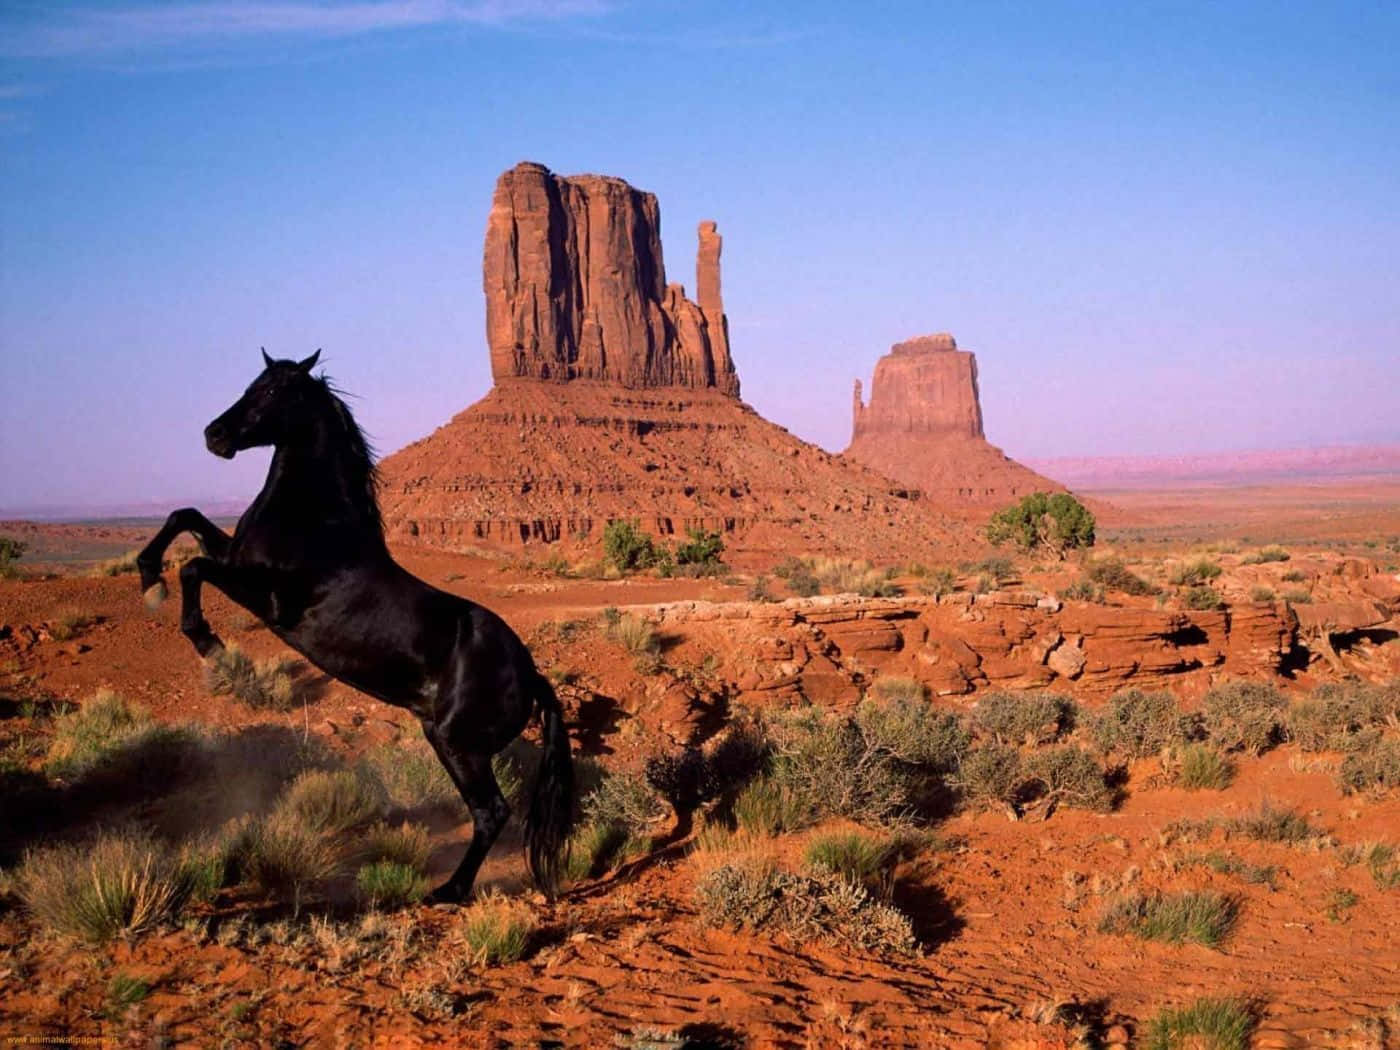 Imagende Un Caballo Mustang Negro Parado En El Desierto